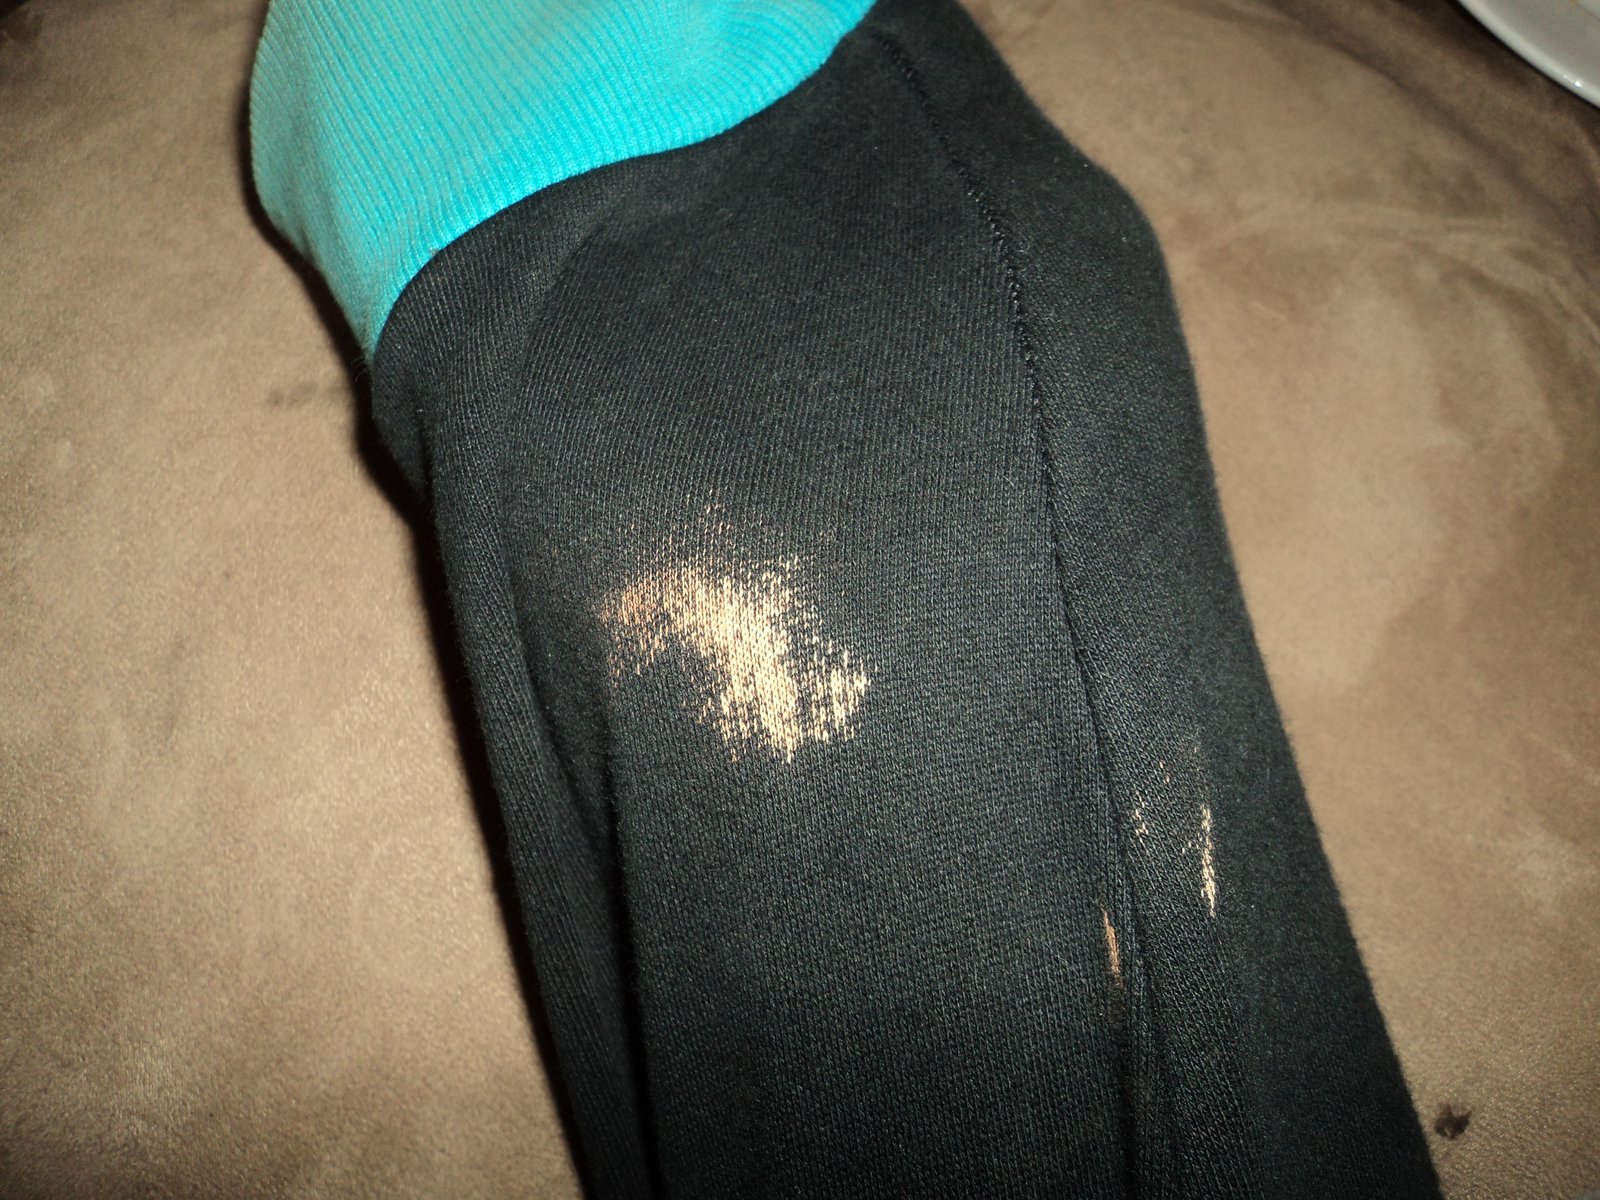 Small bleach stain